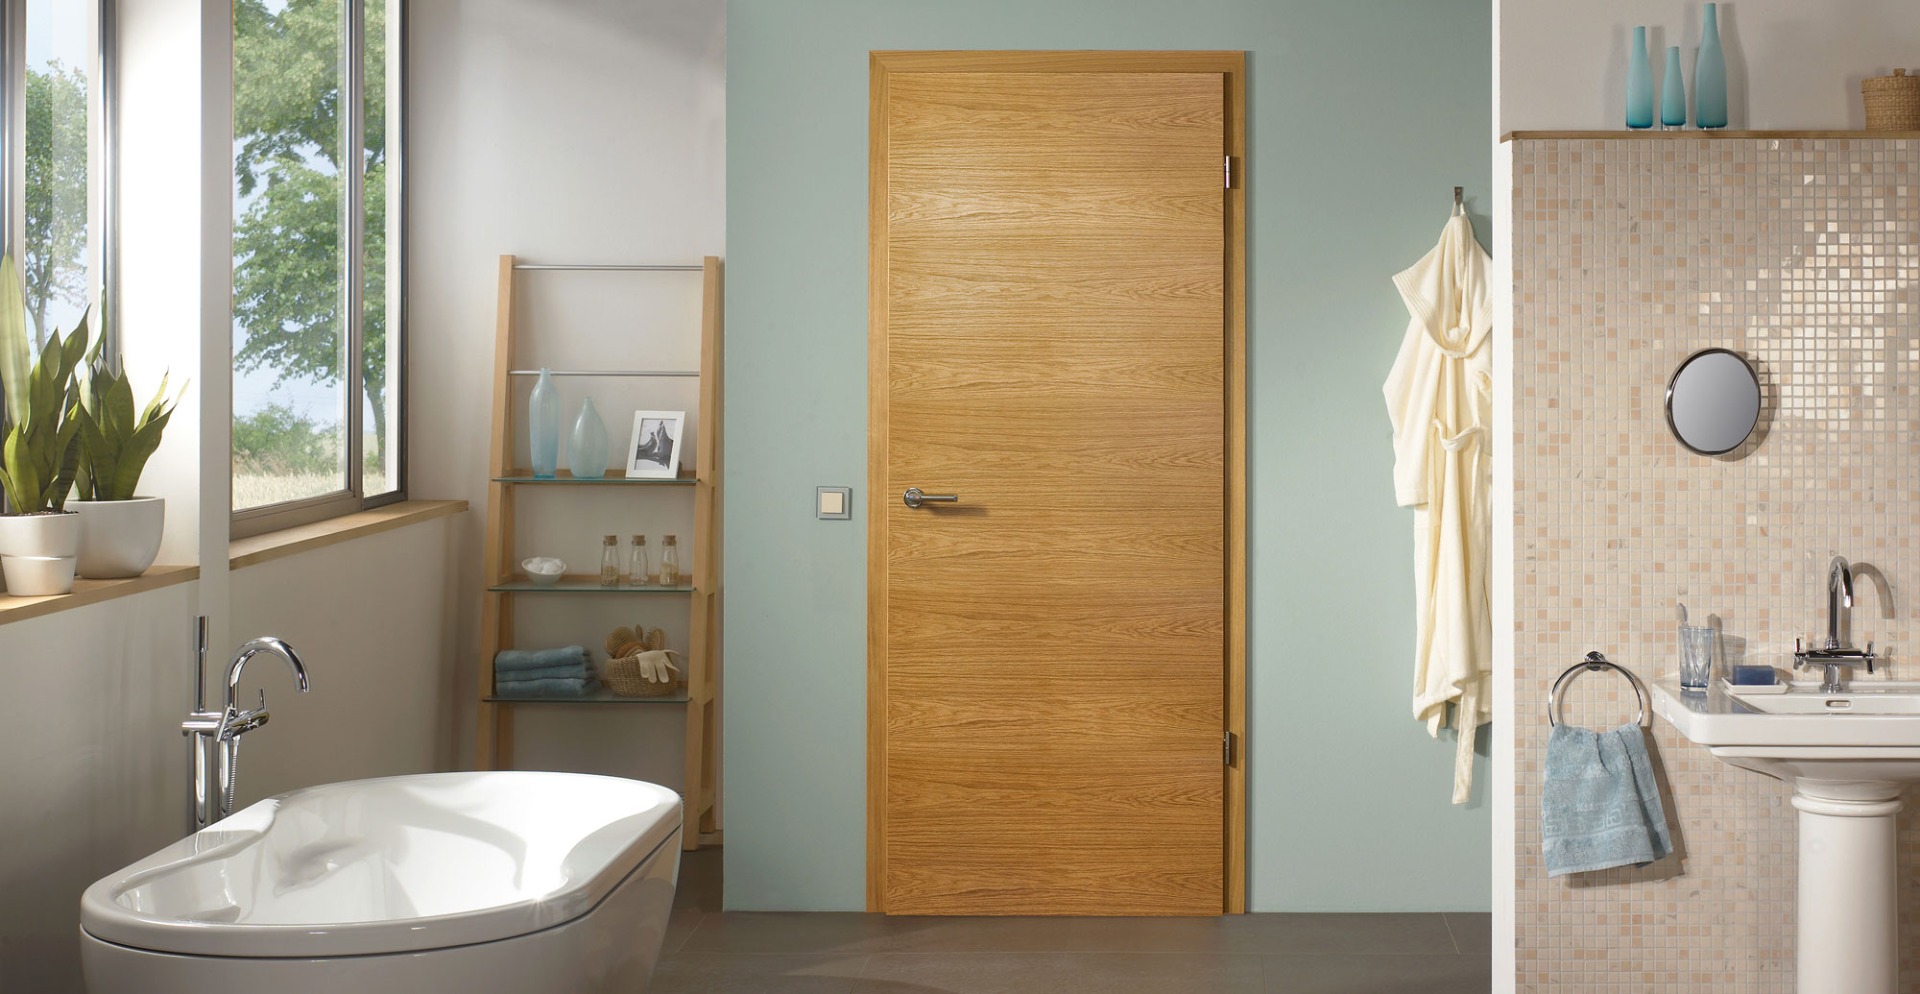 Oak Doors UK - The best selection of Solid and Veneer Wooden Doors